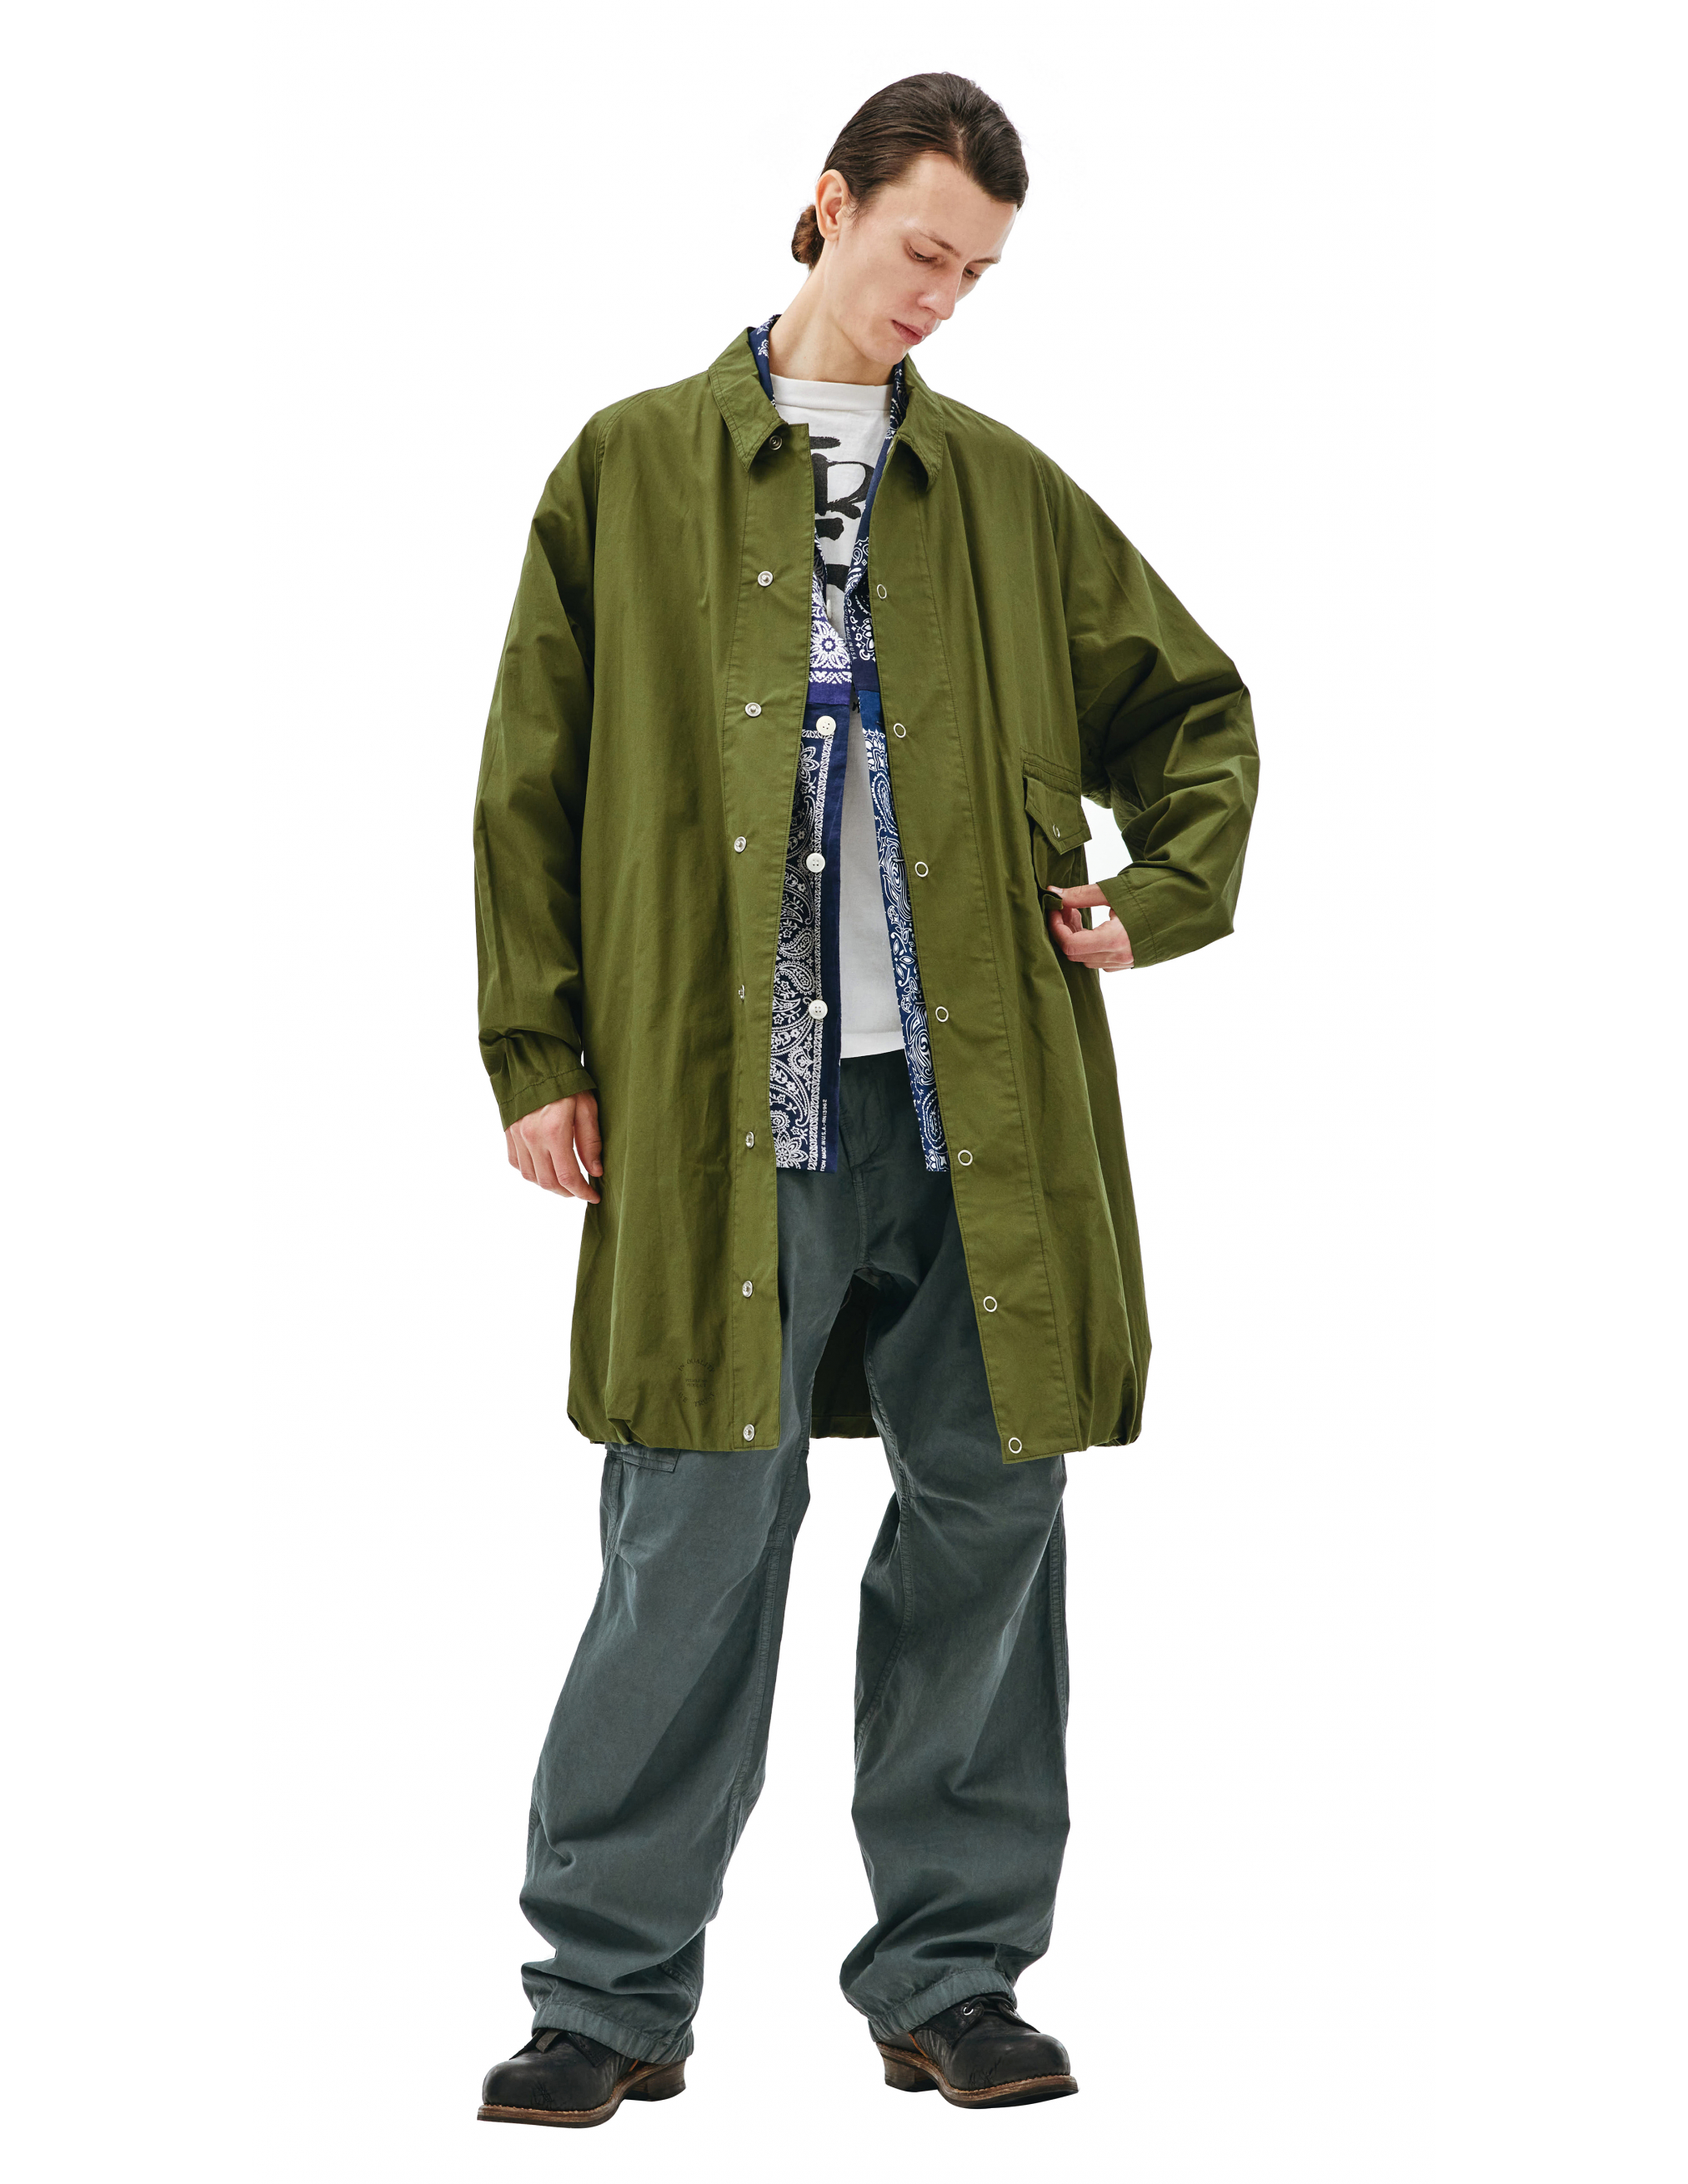 Пальто из хлопка с накладным карманом Visvim 0121205013027/olive, размер 5;4 0121205013027/olive - фото 3